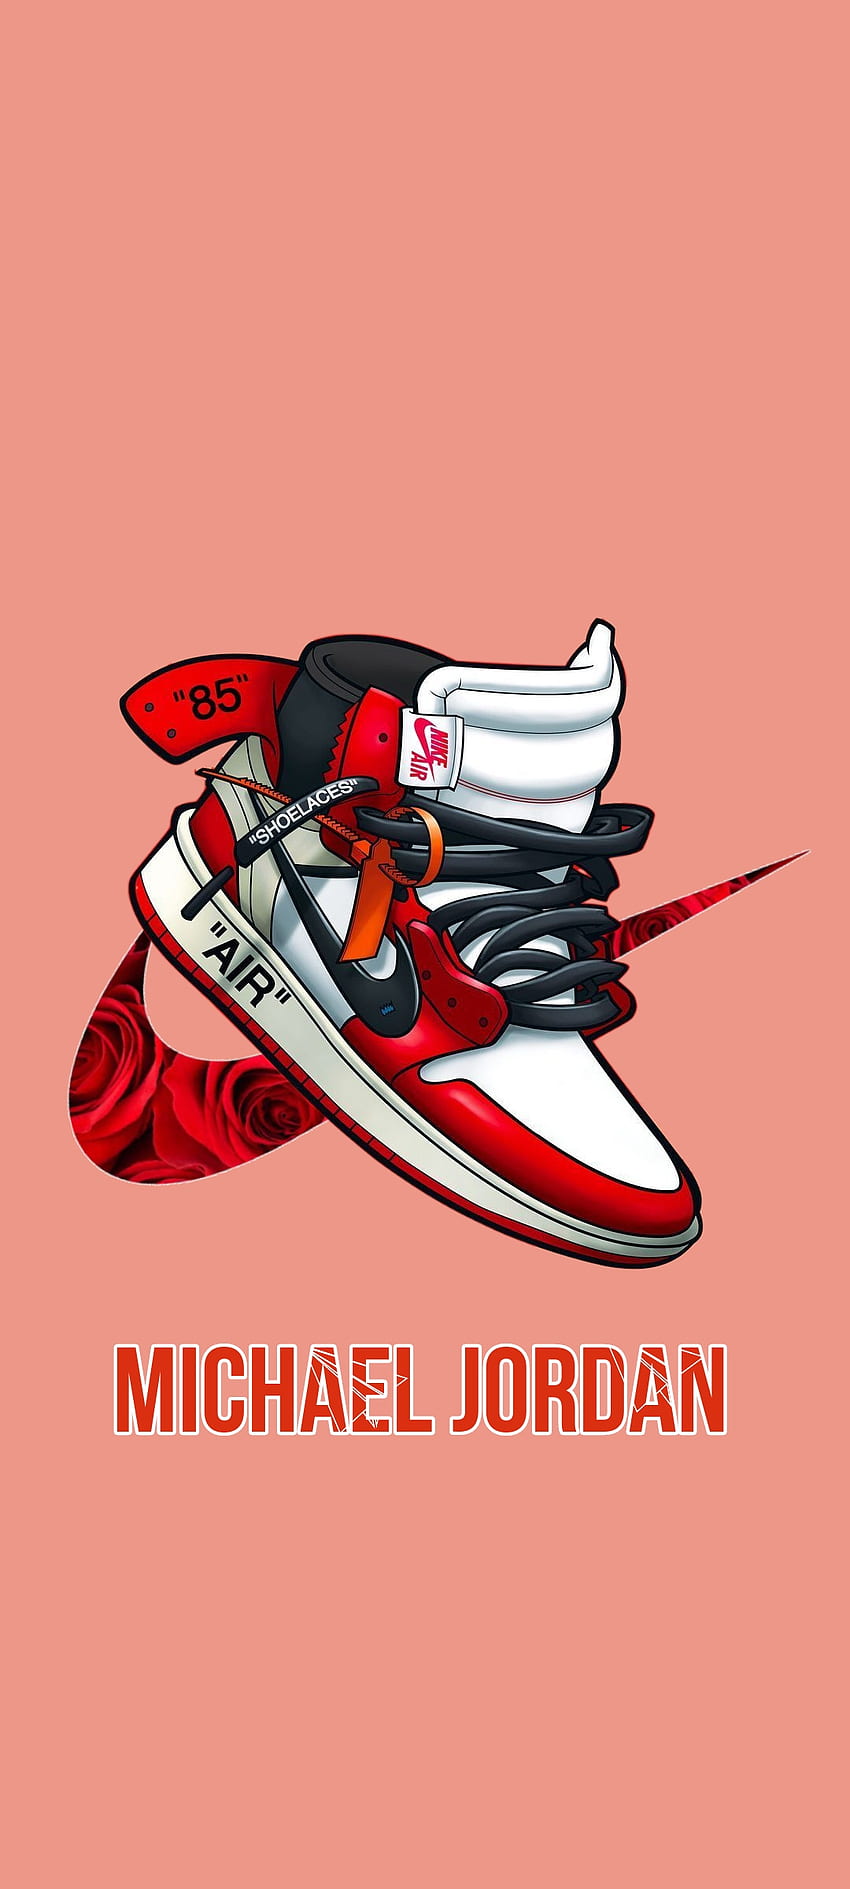 Download Michael Jordan wallpapers for mobile phone free Michael Jordan  HD pictures